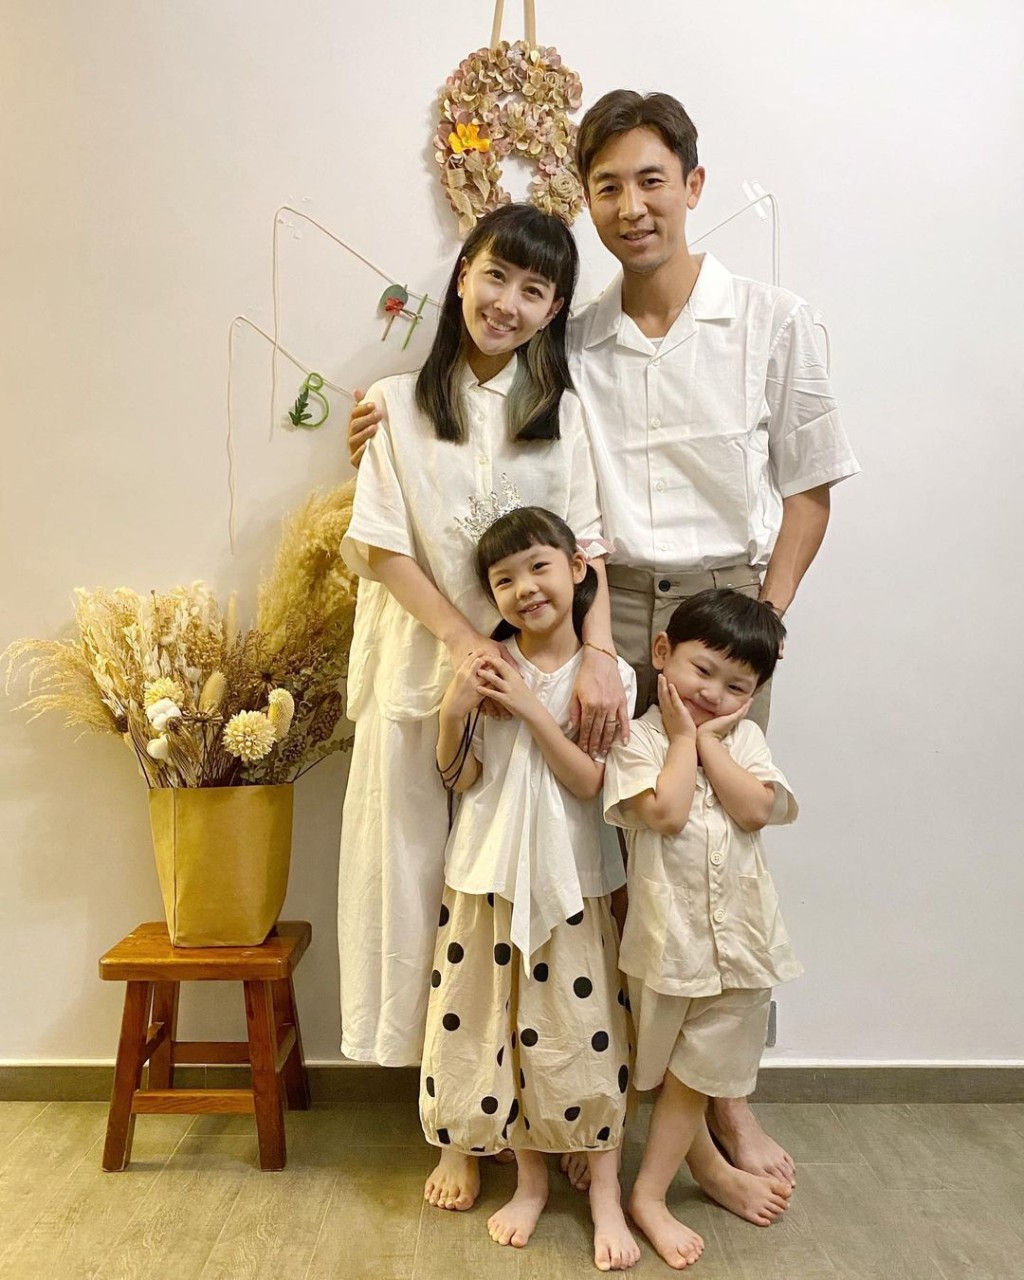 上年的無綫頒獎禮譚俊彥獲視帝一位時也正是二人結婚7周年紀念日。